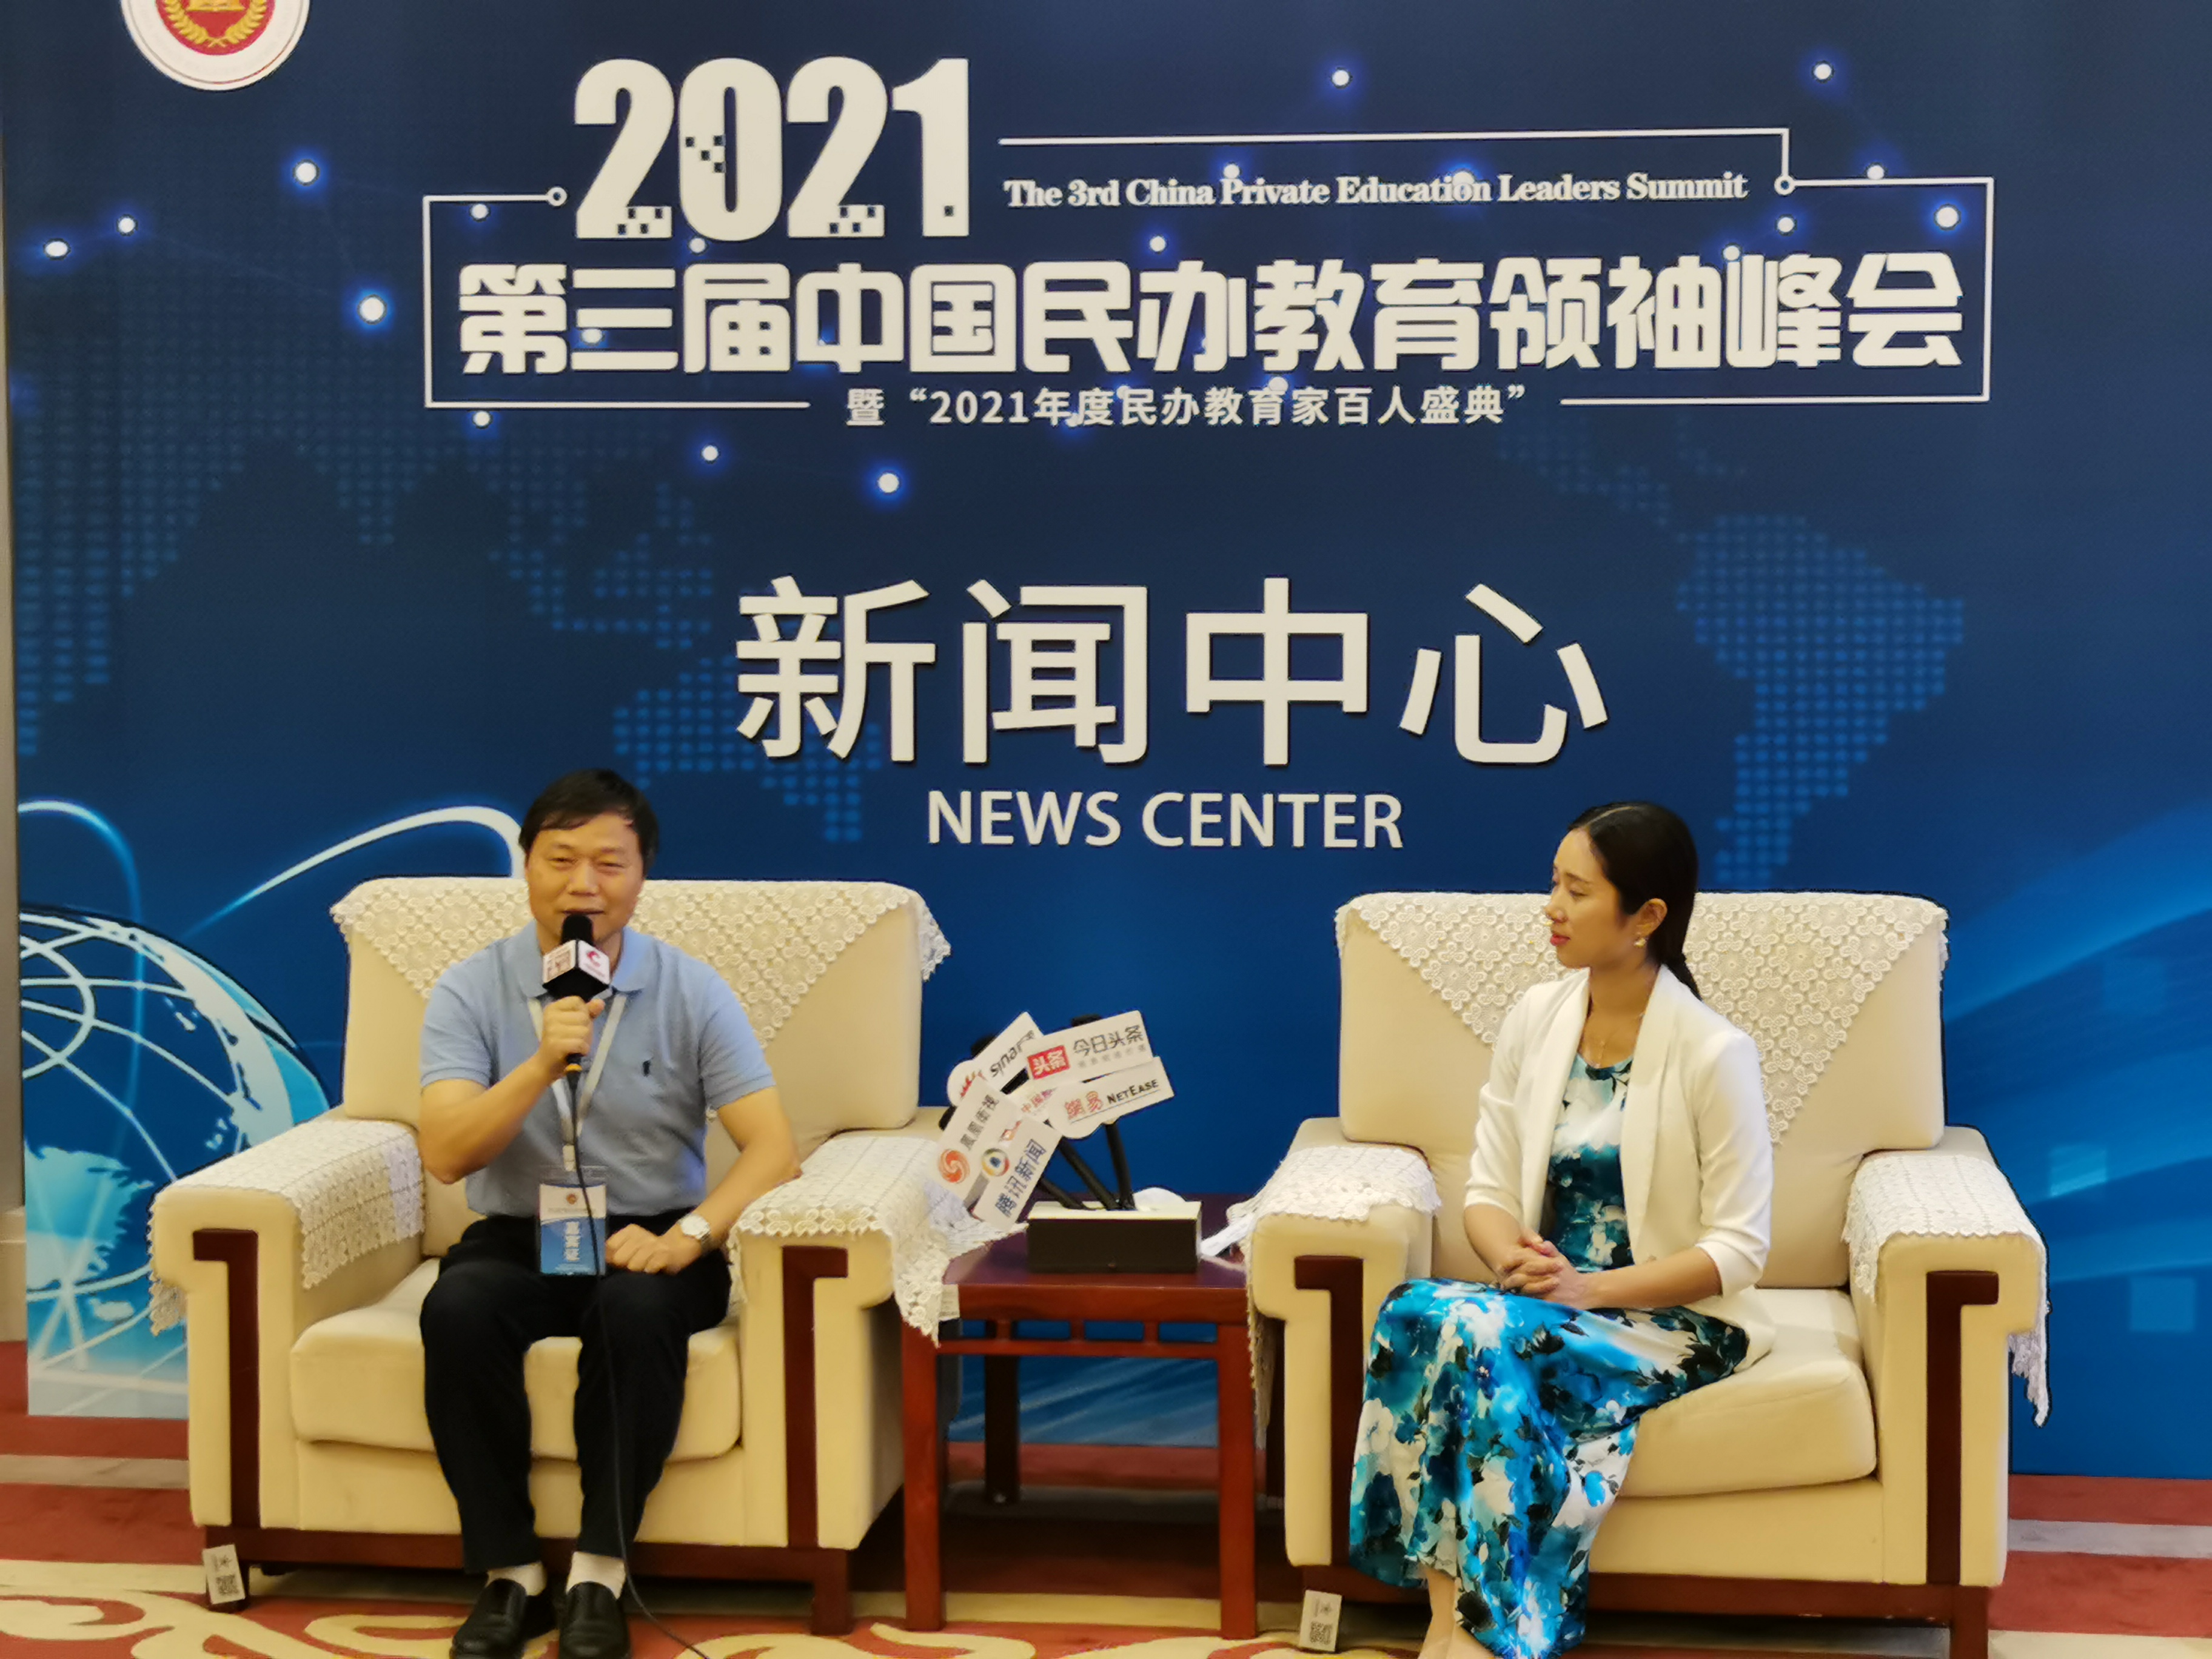 2021第三届中国民办教育领袖峰会